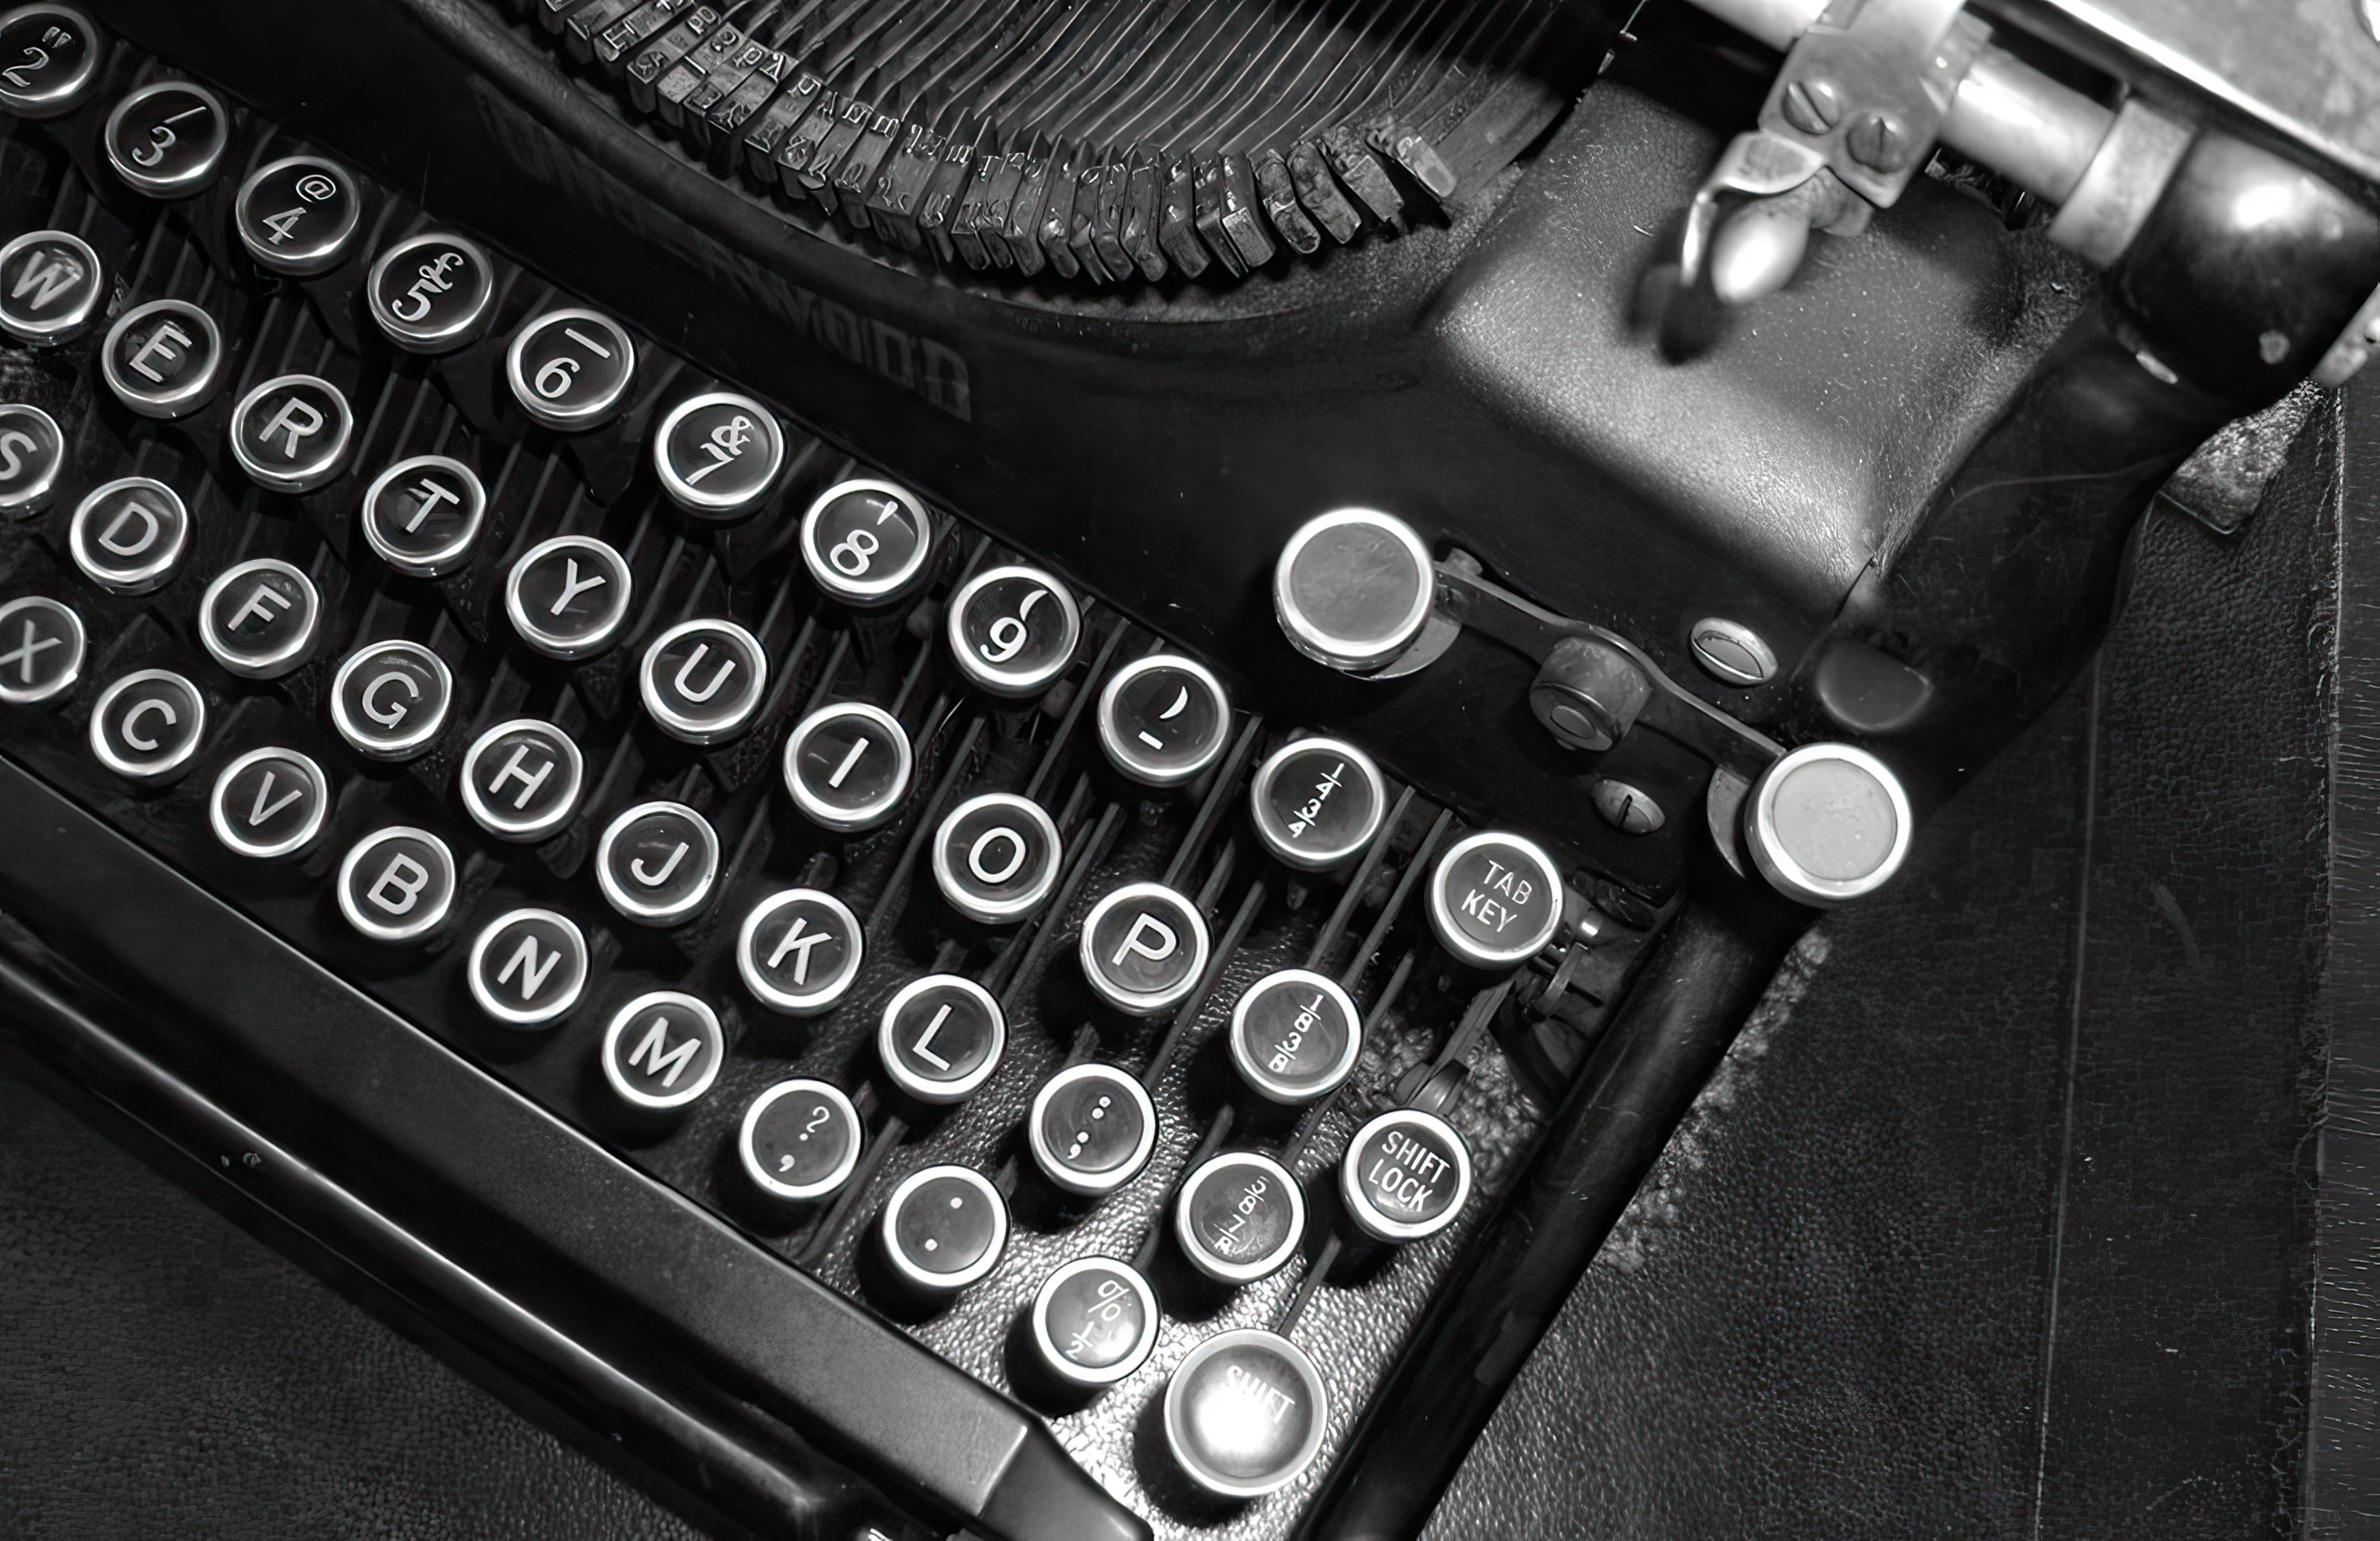 2021 Adapted Story Showcase - Image of vintage typewriter